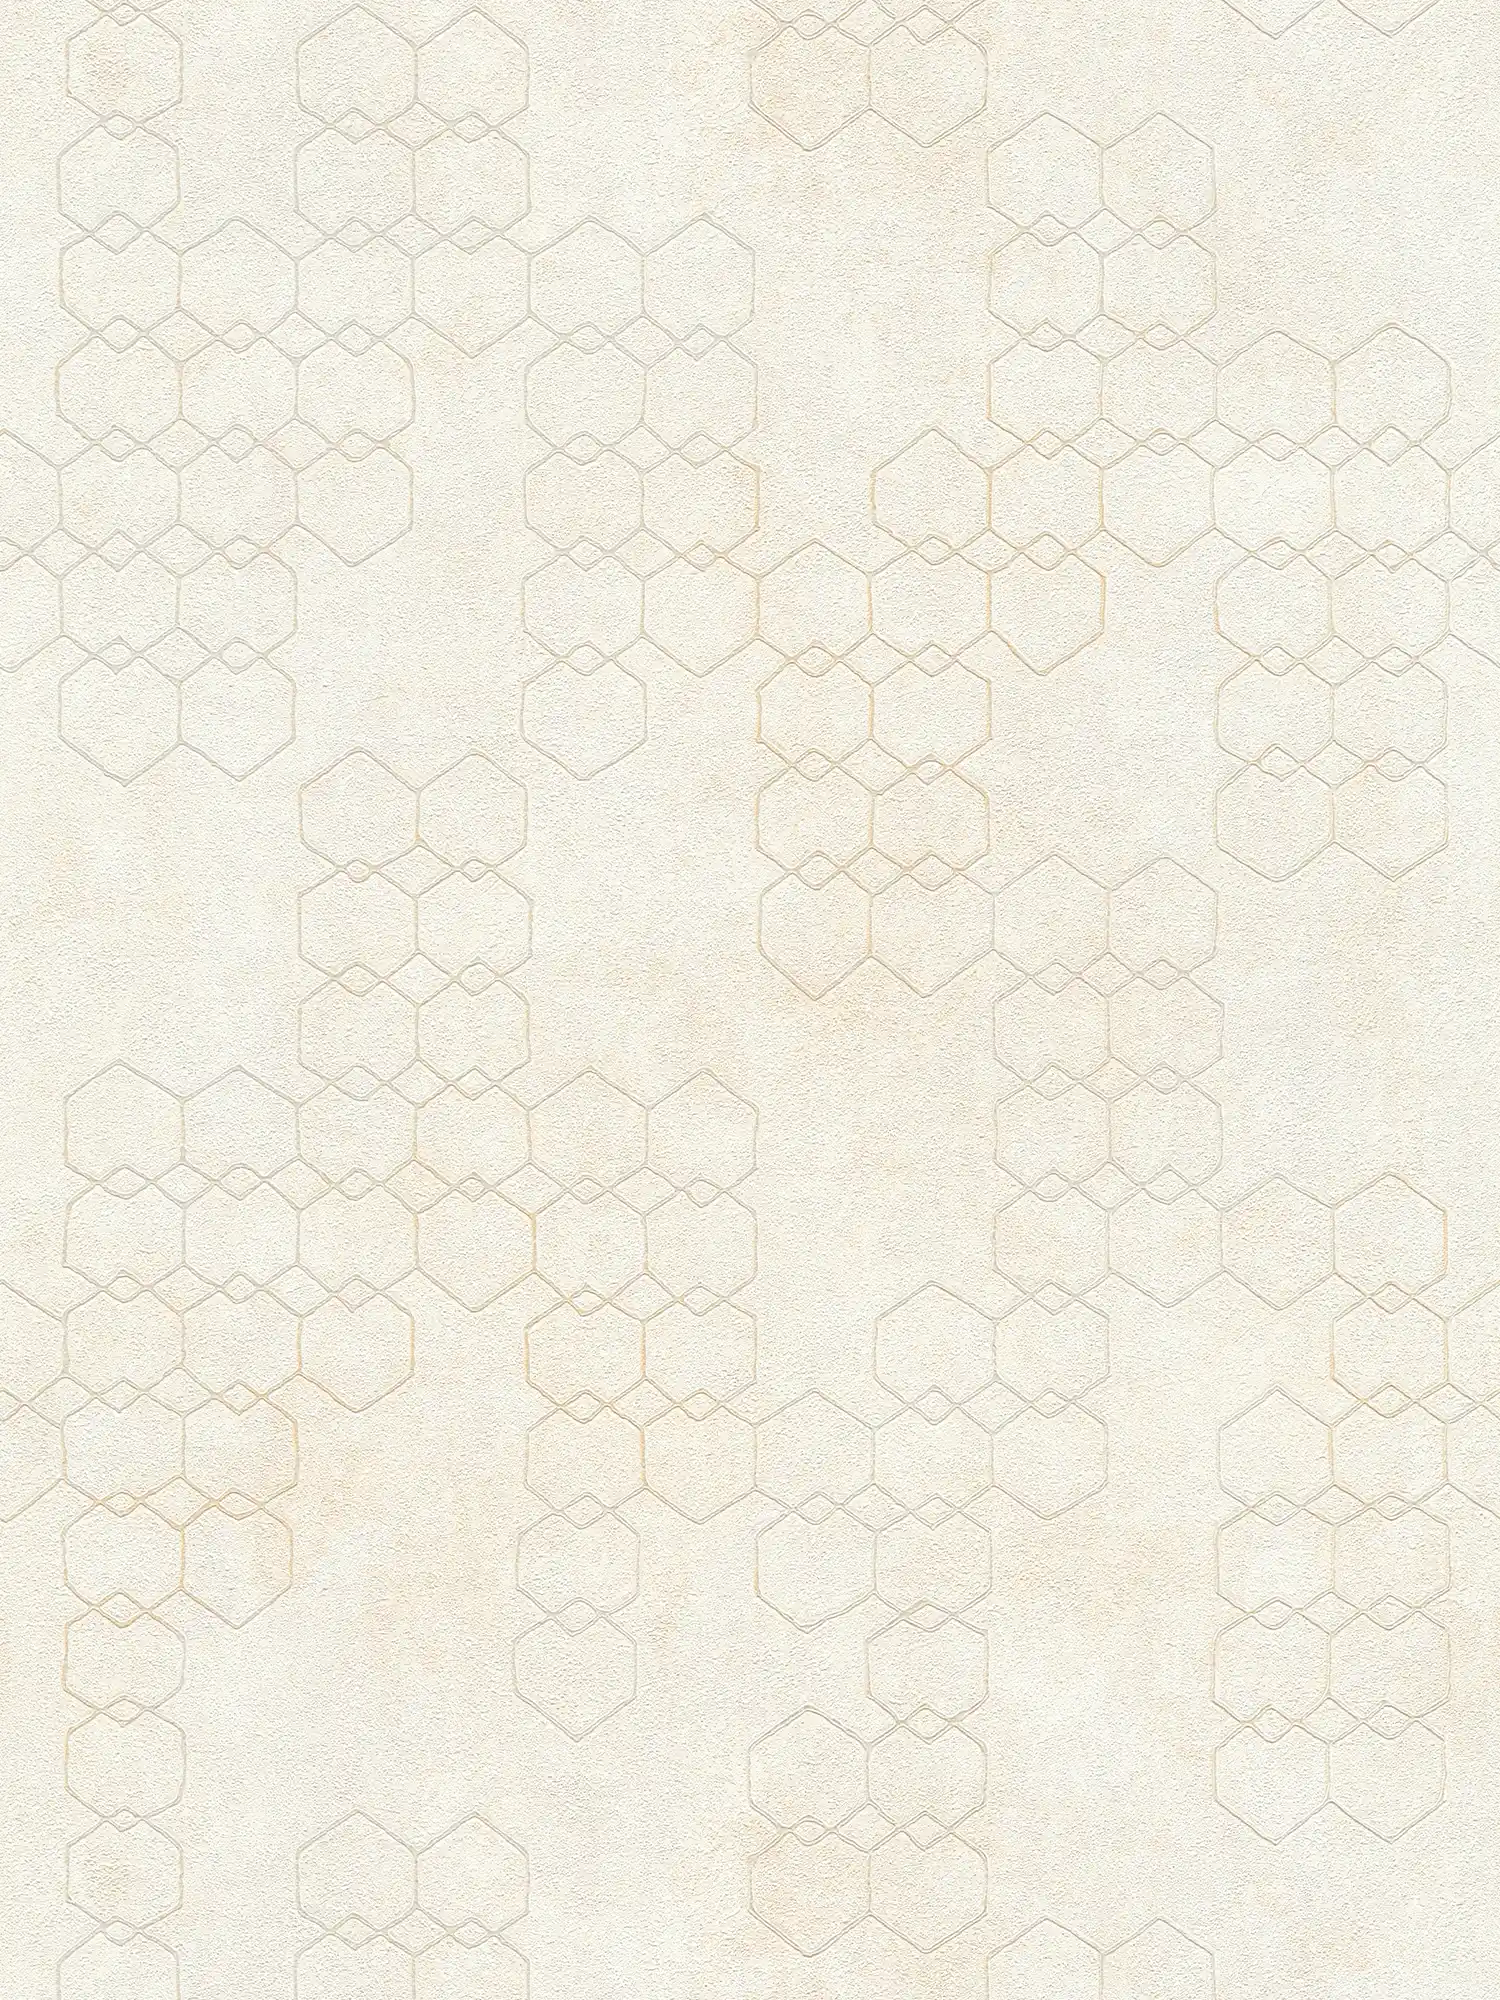 Geometrische Mustertapete im Industrial Style – Creme, Grau, Weiß
